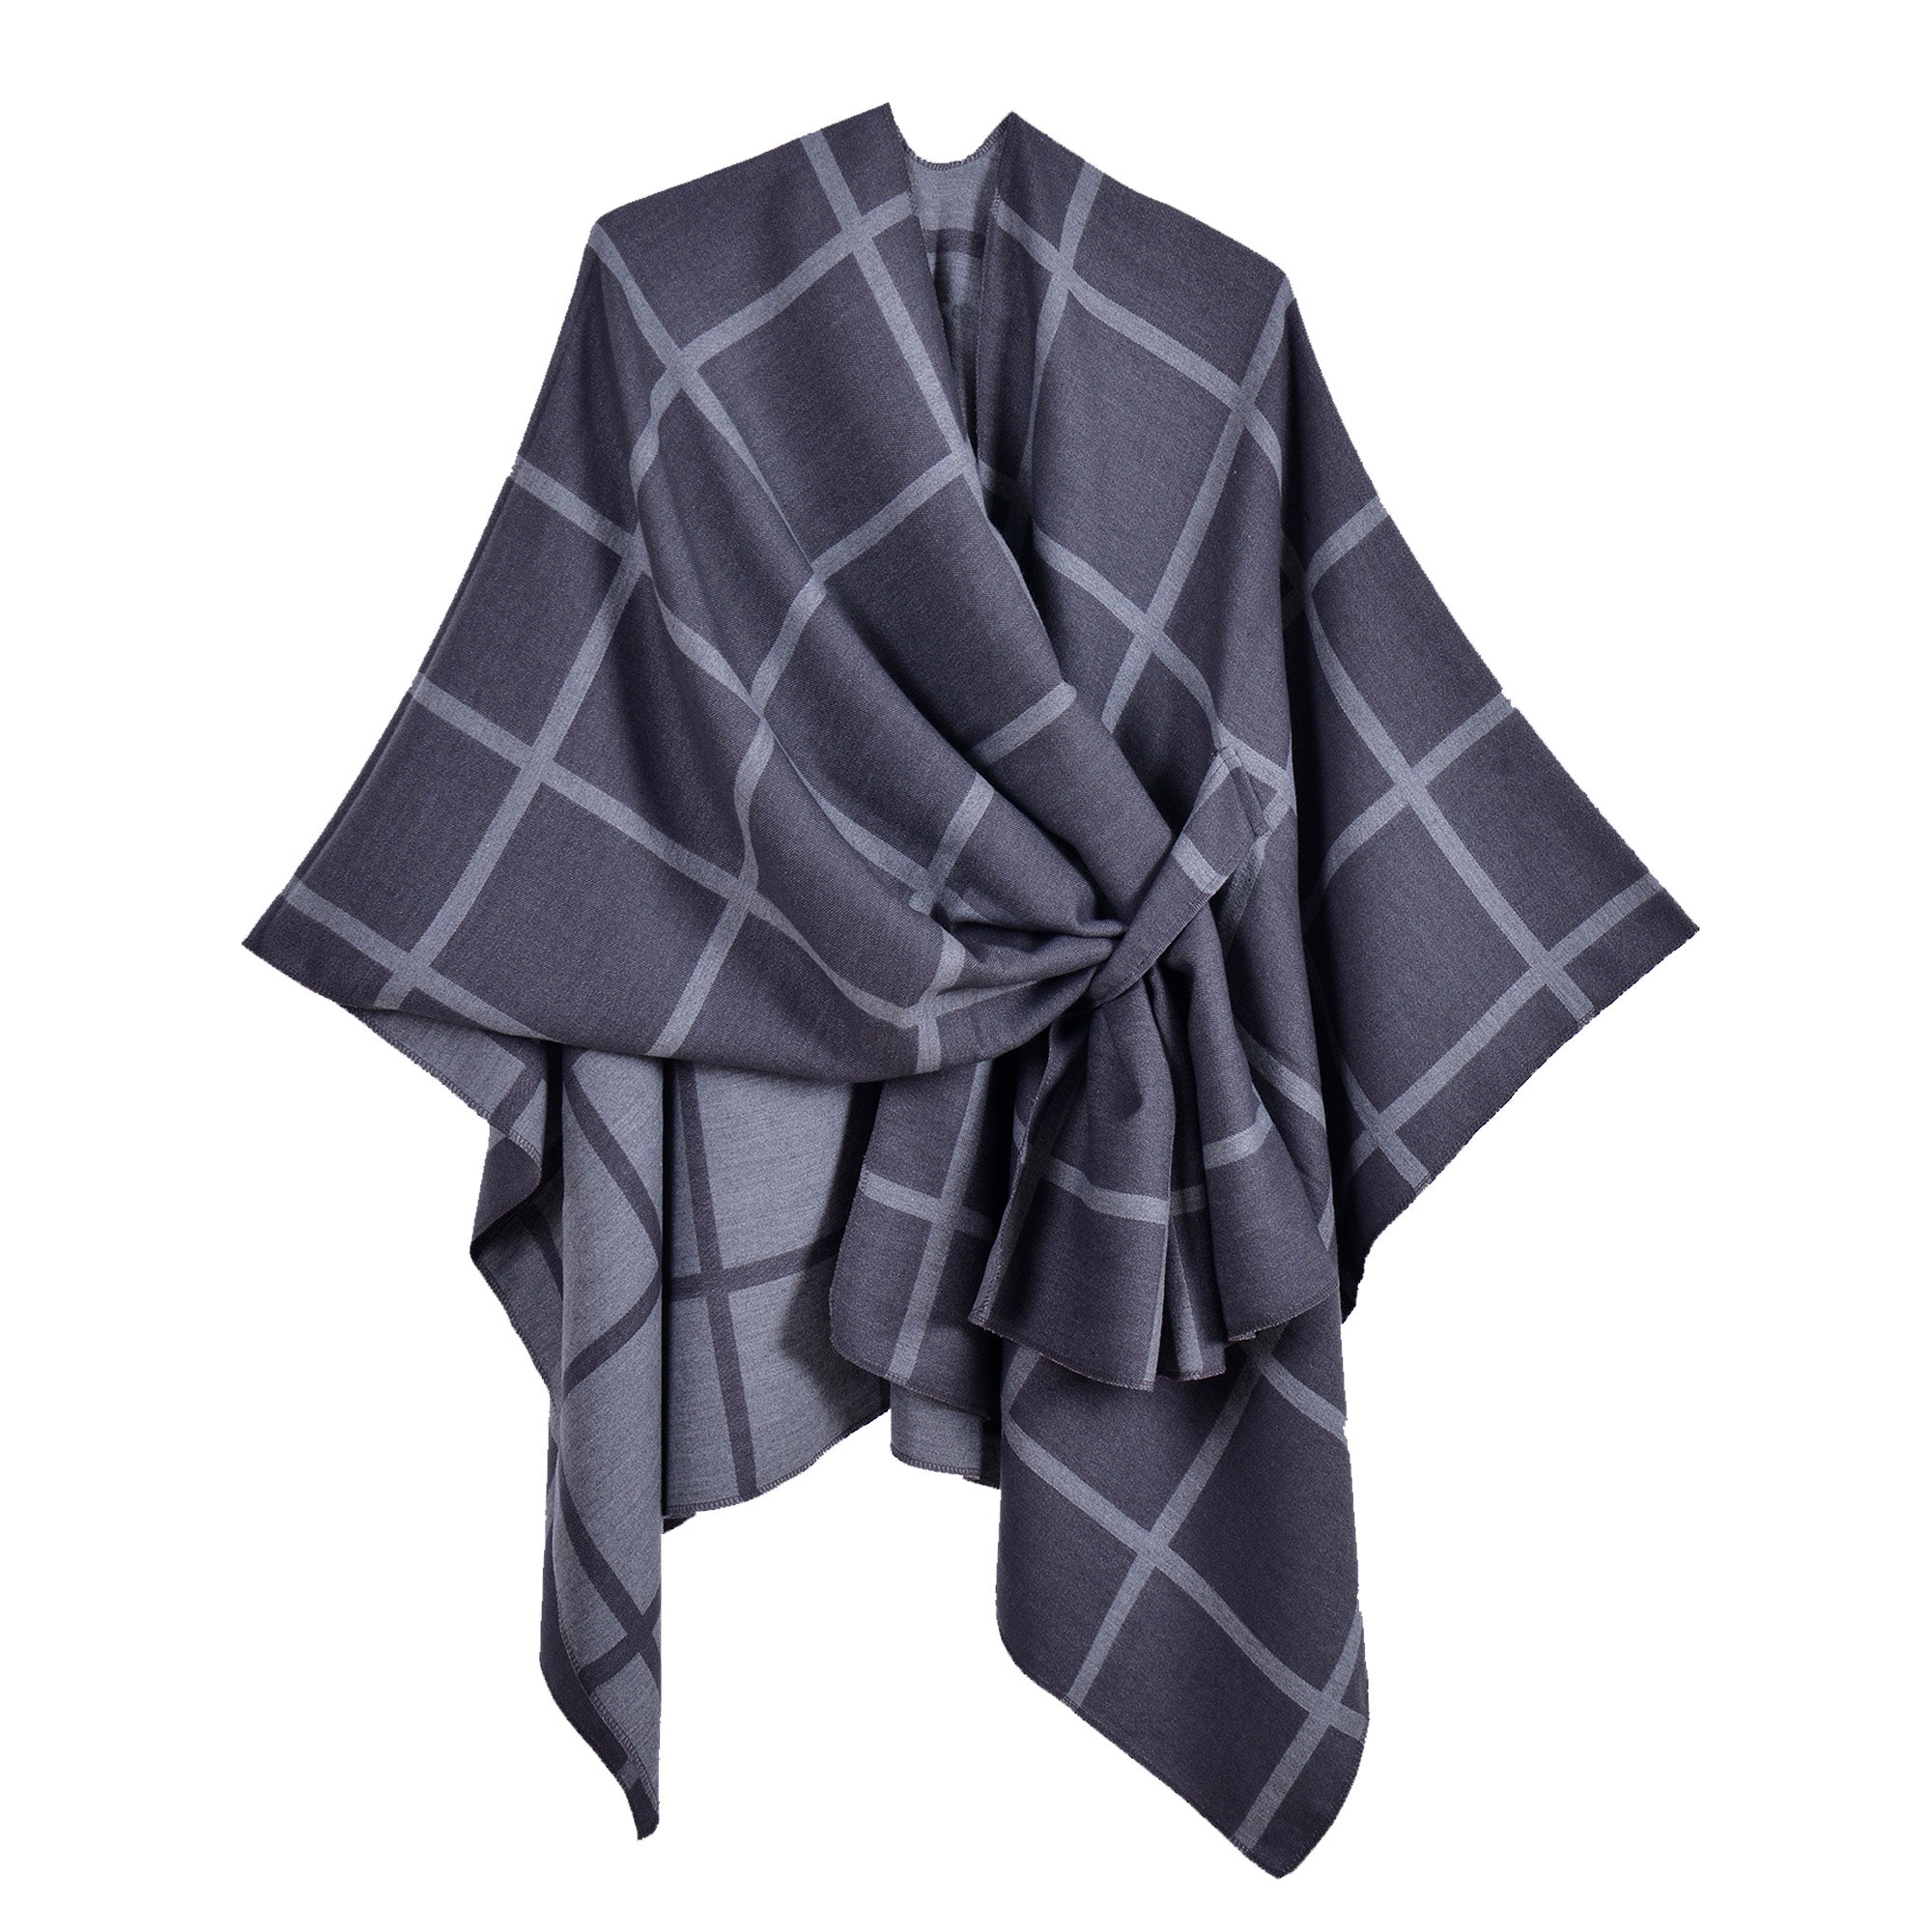 New plaid shawl gray